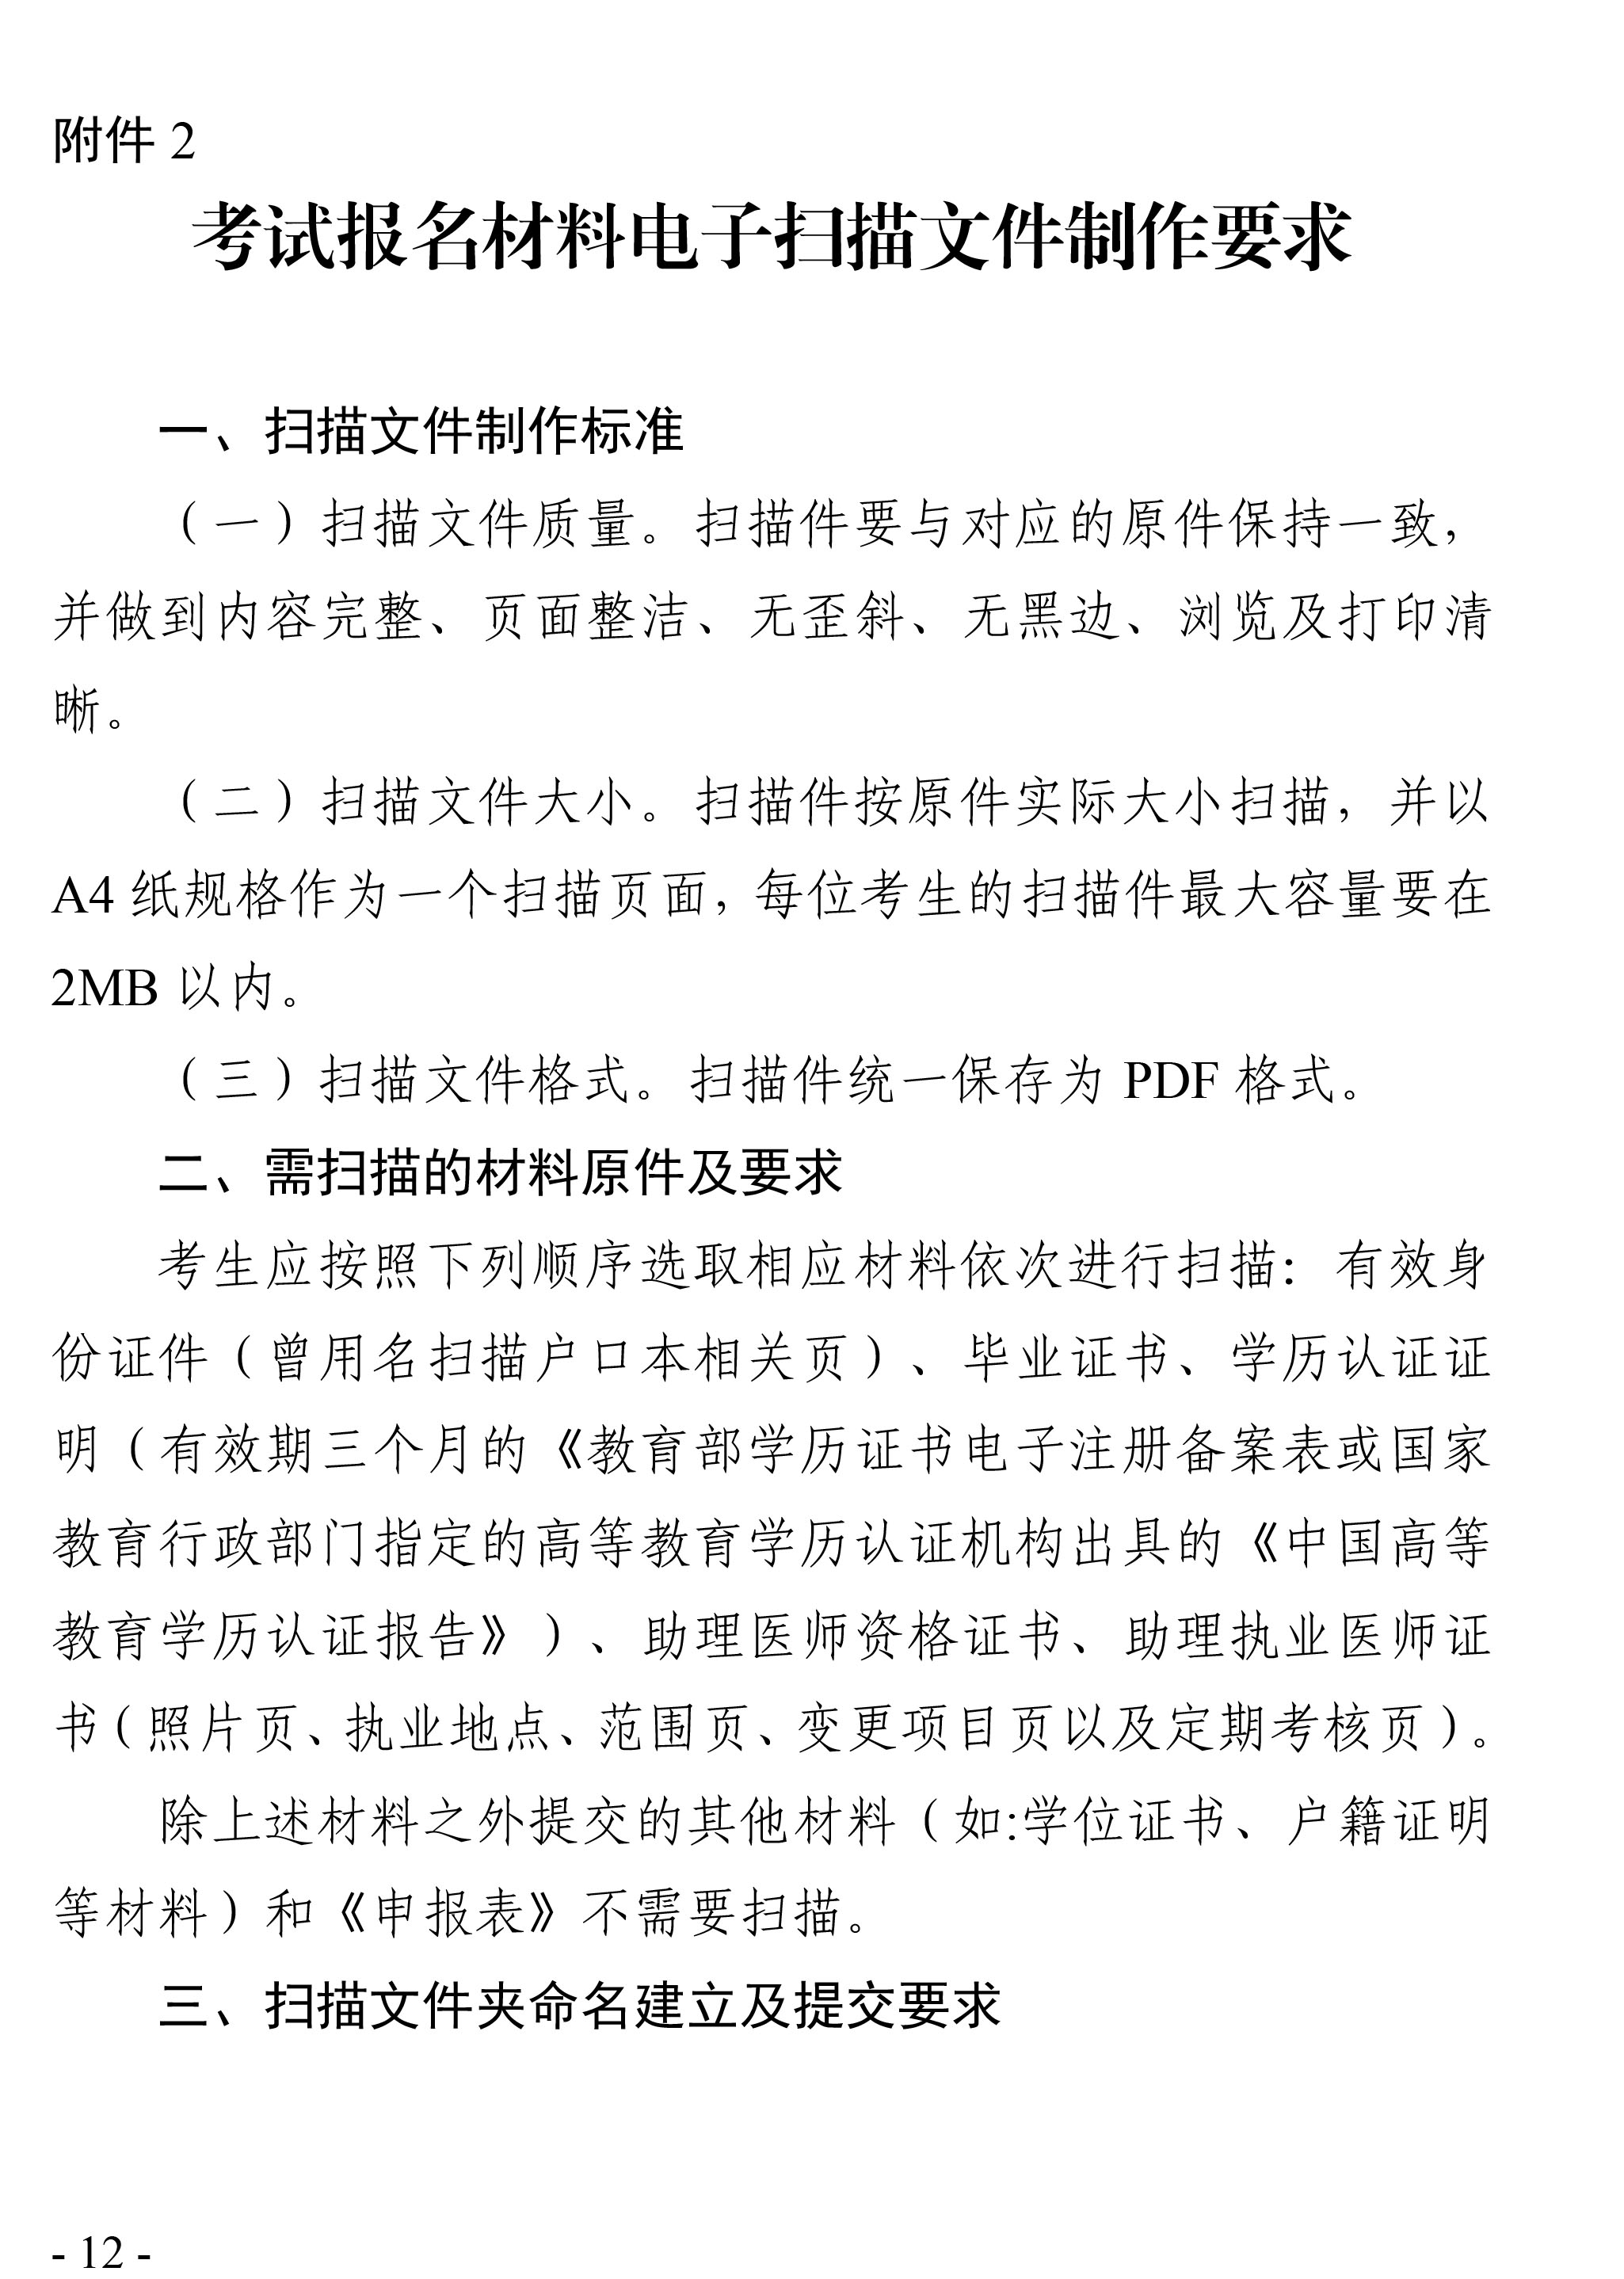 天津考区2020年医师资格考试报名通知